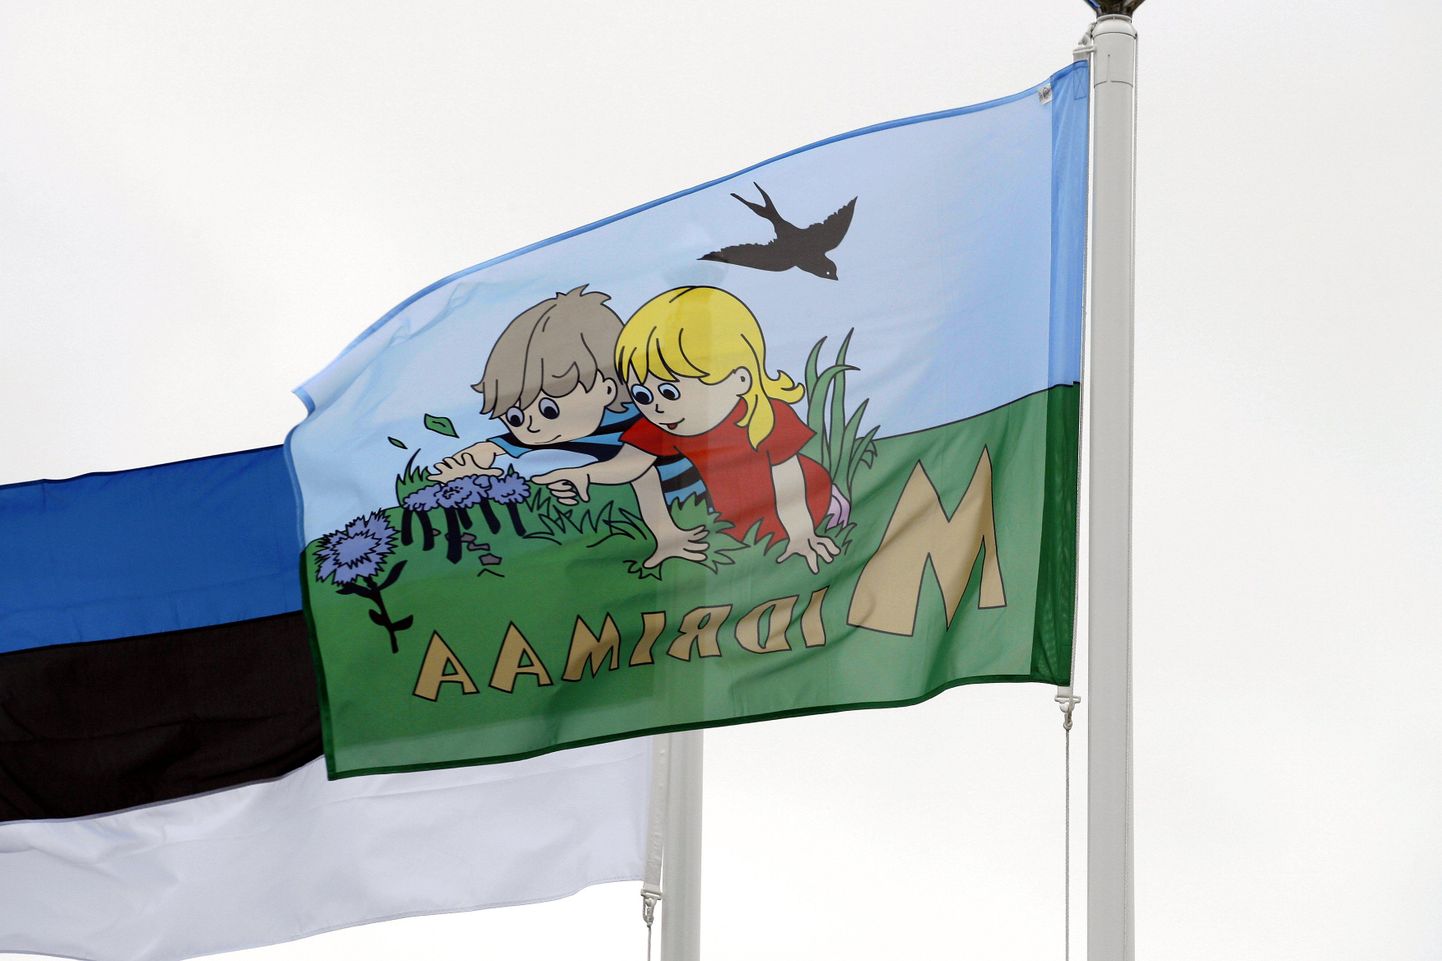 Praegu lehvib Viljandi koolide ja lasteaedade juures lisaks Eesti lipule ka haridusasutuse enda lipp. Peatselt lisandub neile ka Viljandi sinivalge lipp.